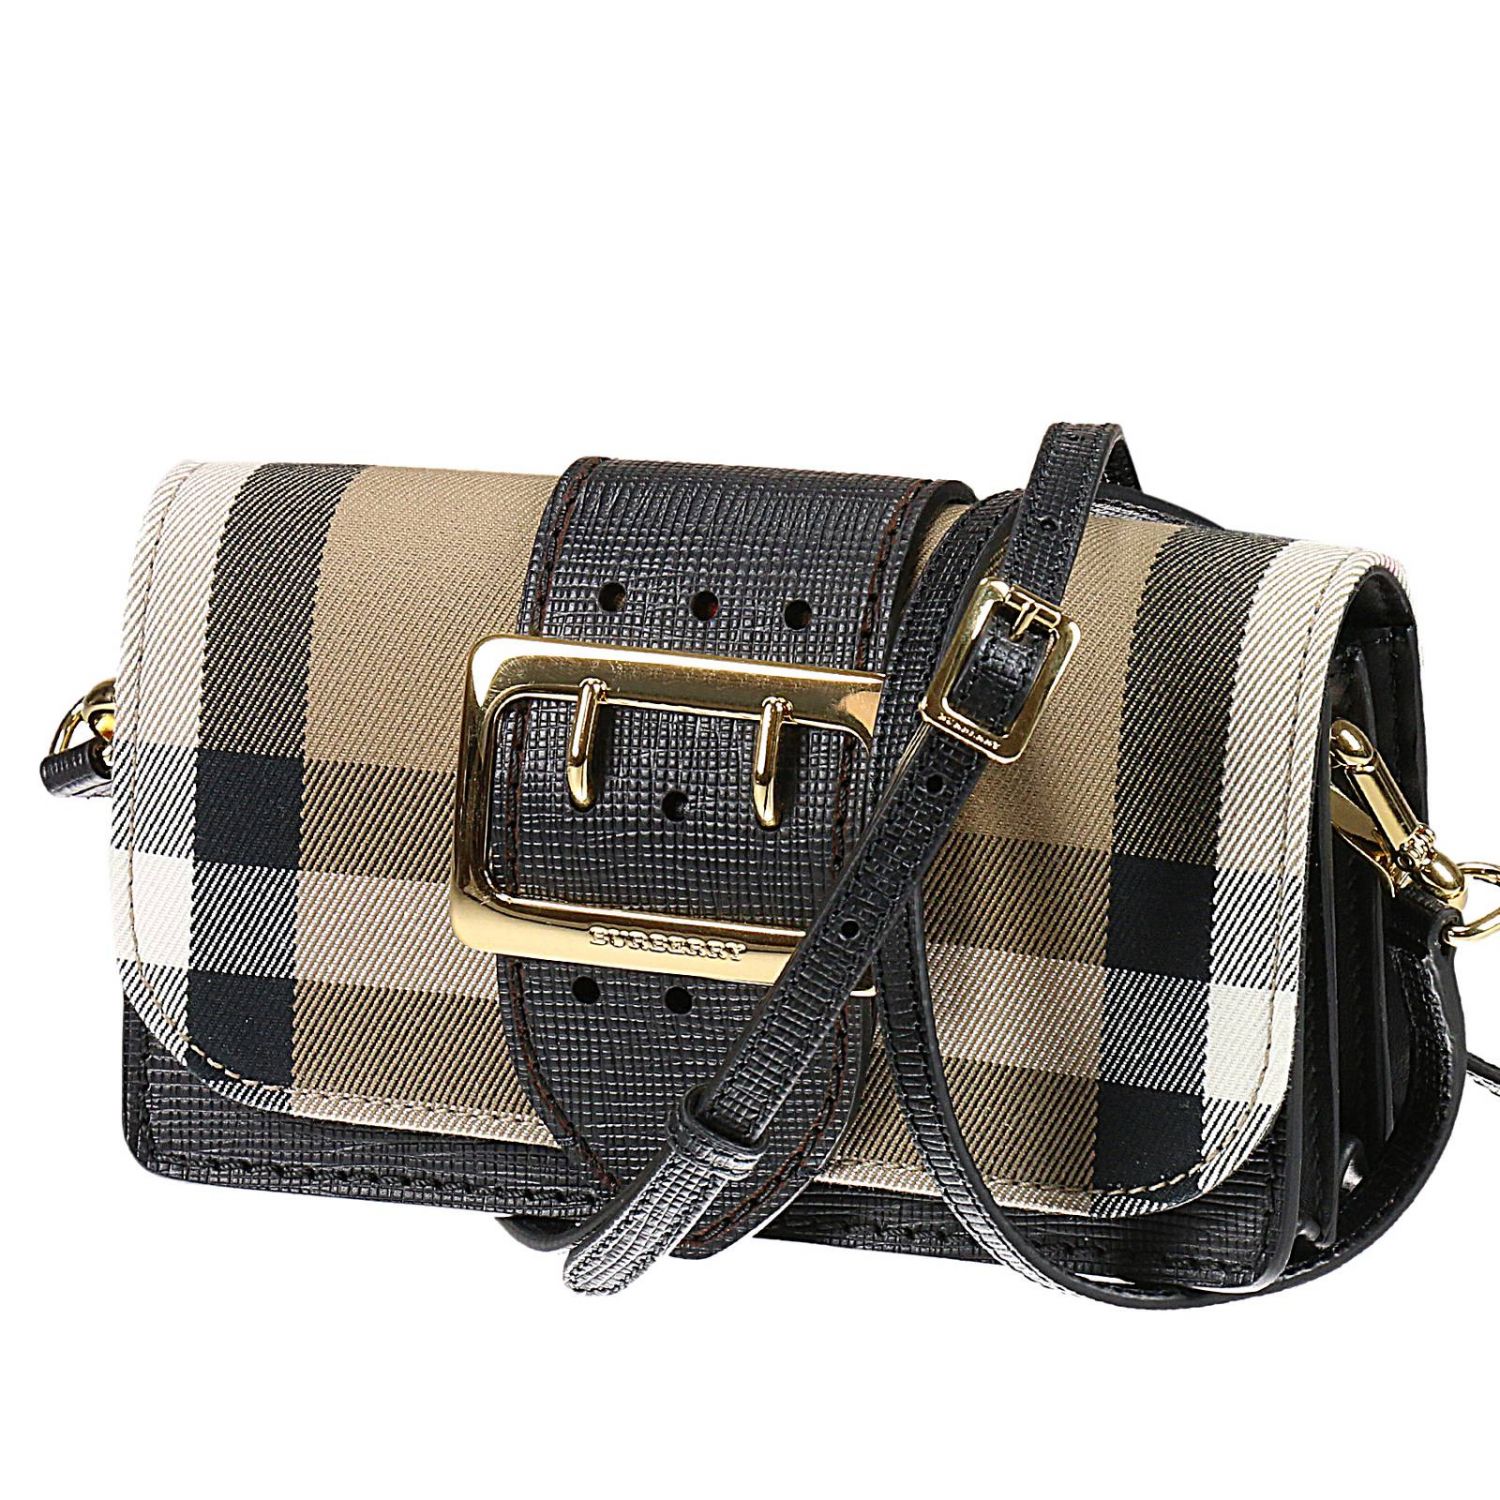 Burberry Handbag Outlet Online 